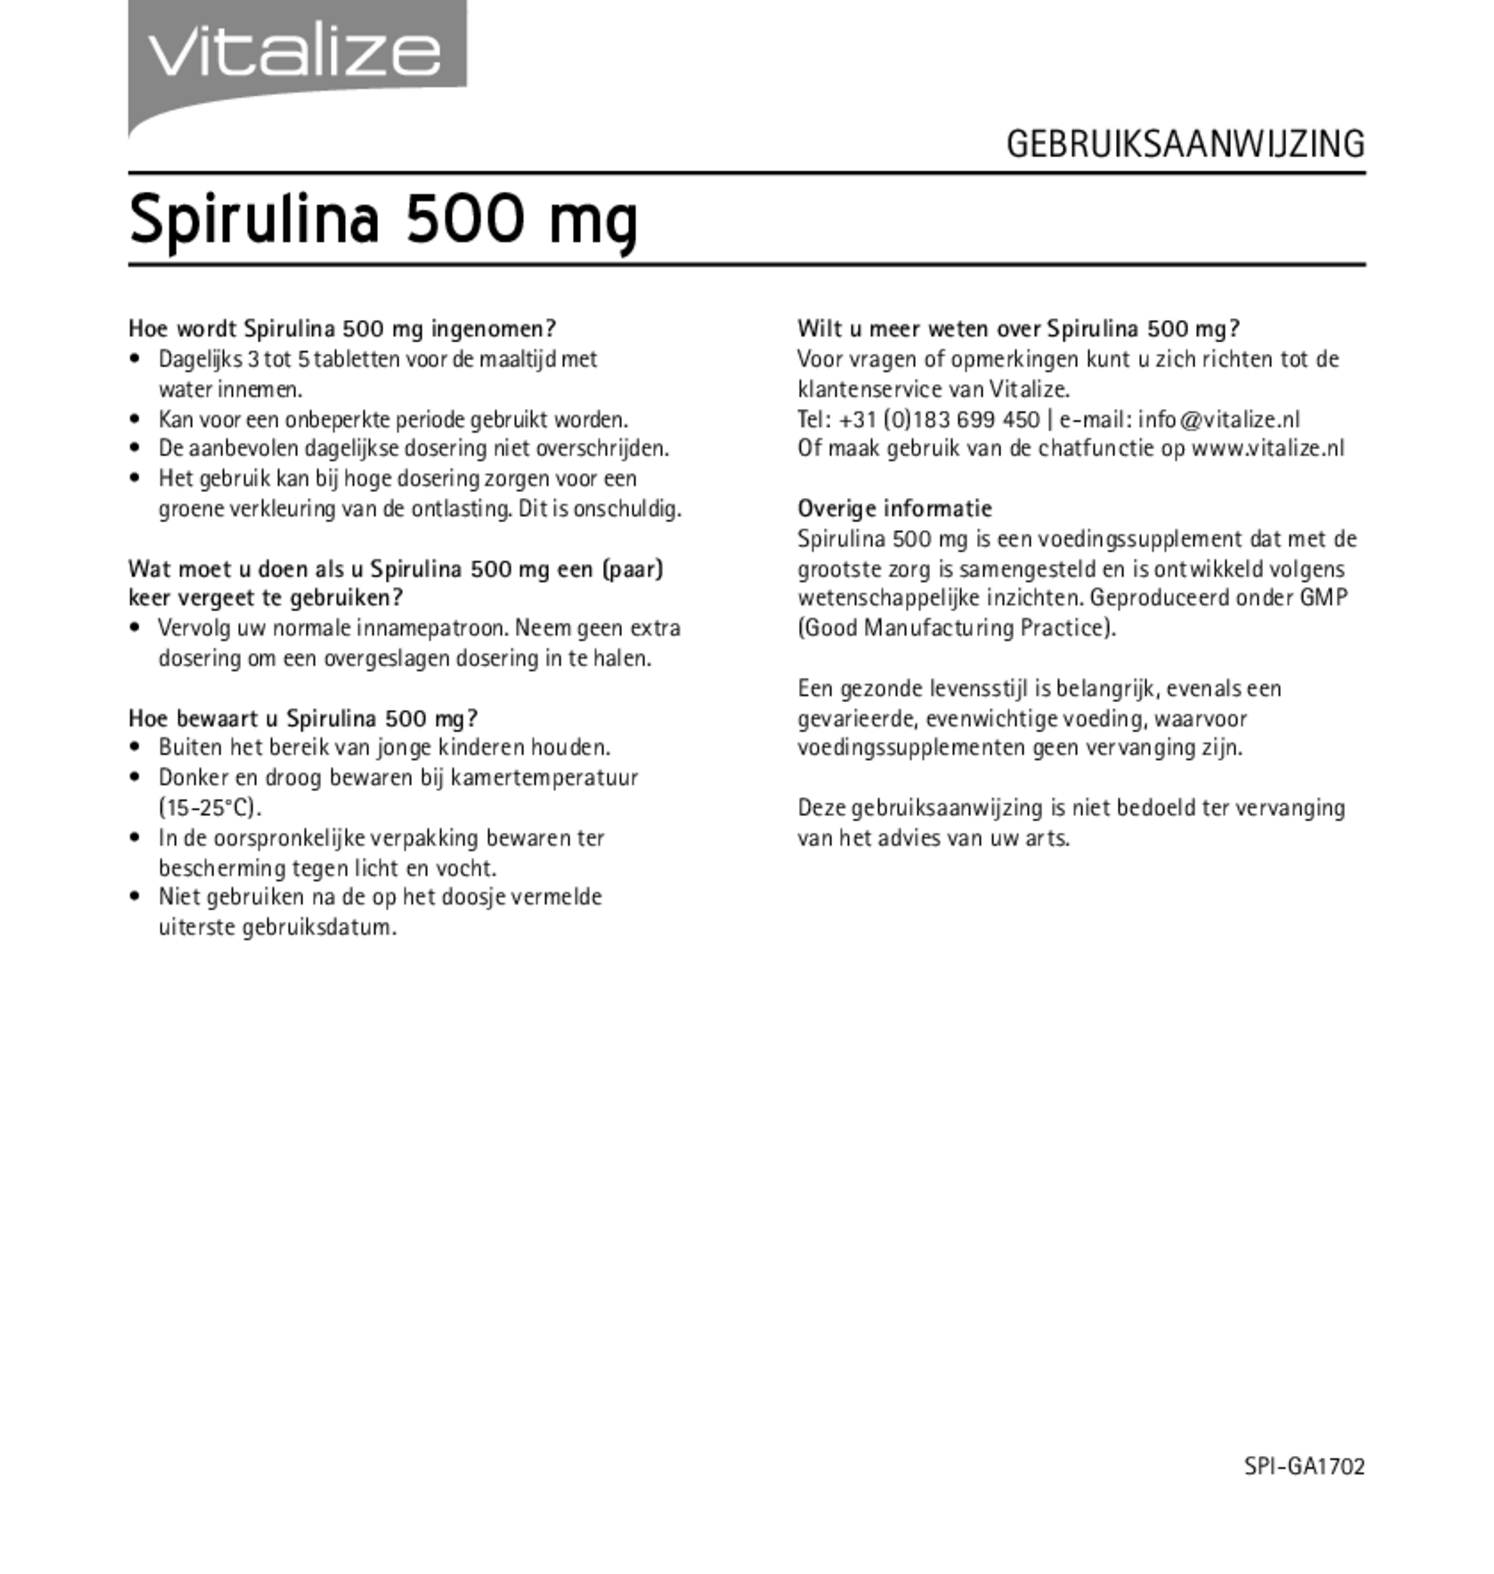 Spirulina 500 mg Tabletten afbeelding van document #2, gebruiksaanwijzing